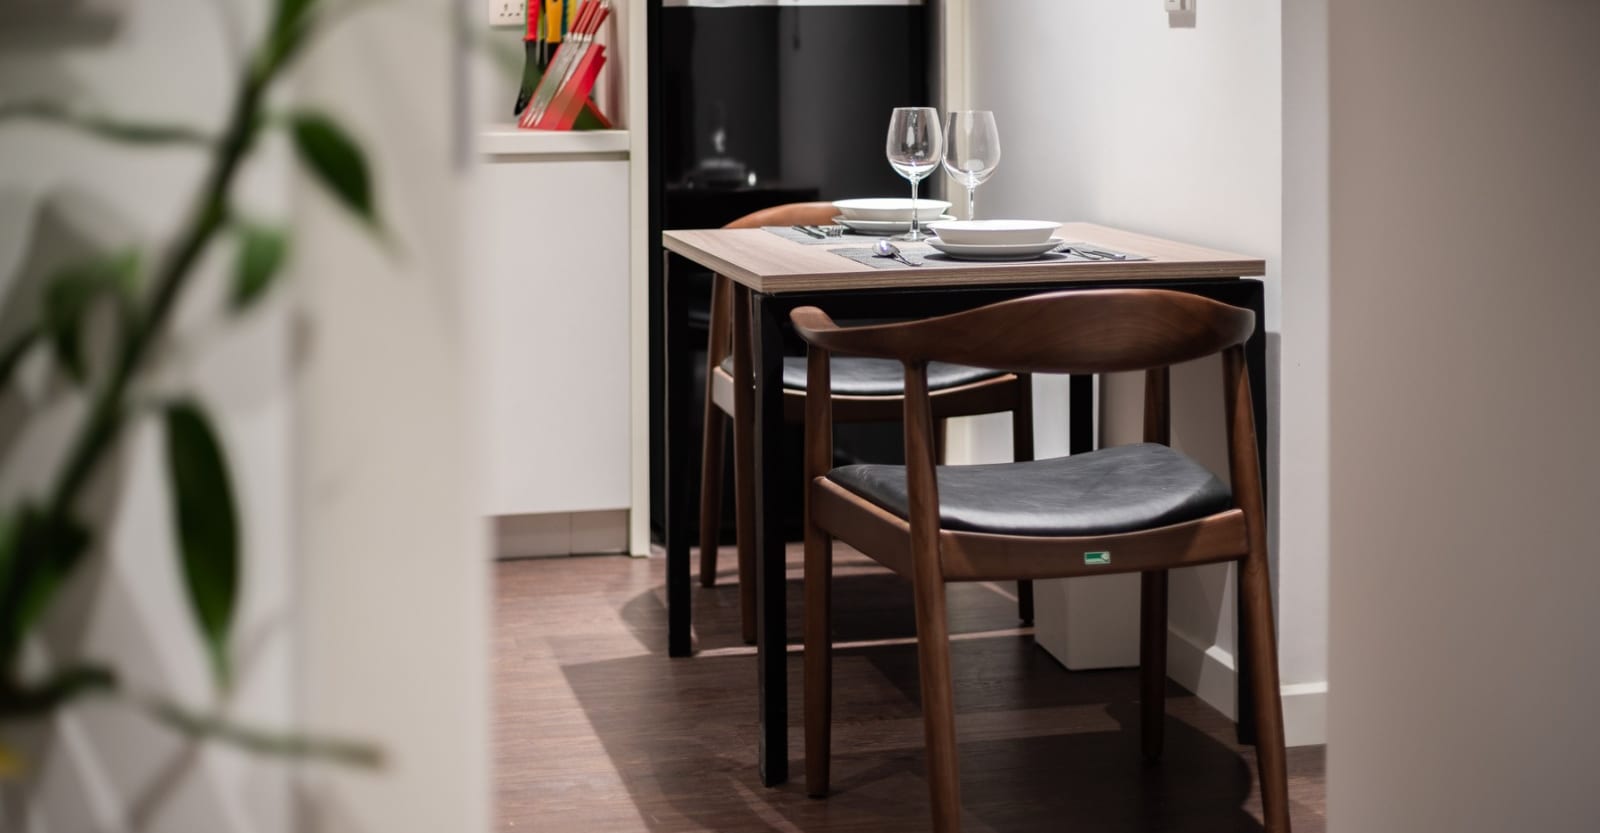 WOODPRO - Sản xuất đồ nội thất gỗ, bàn ghế ăn, bàn ghế cafe, nhà hàng